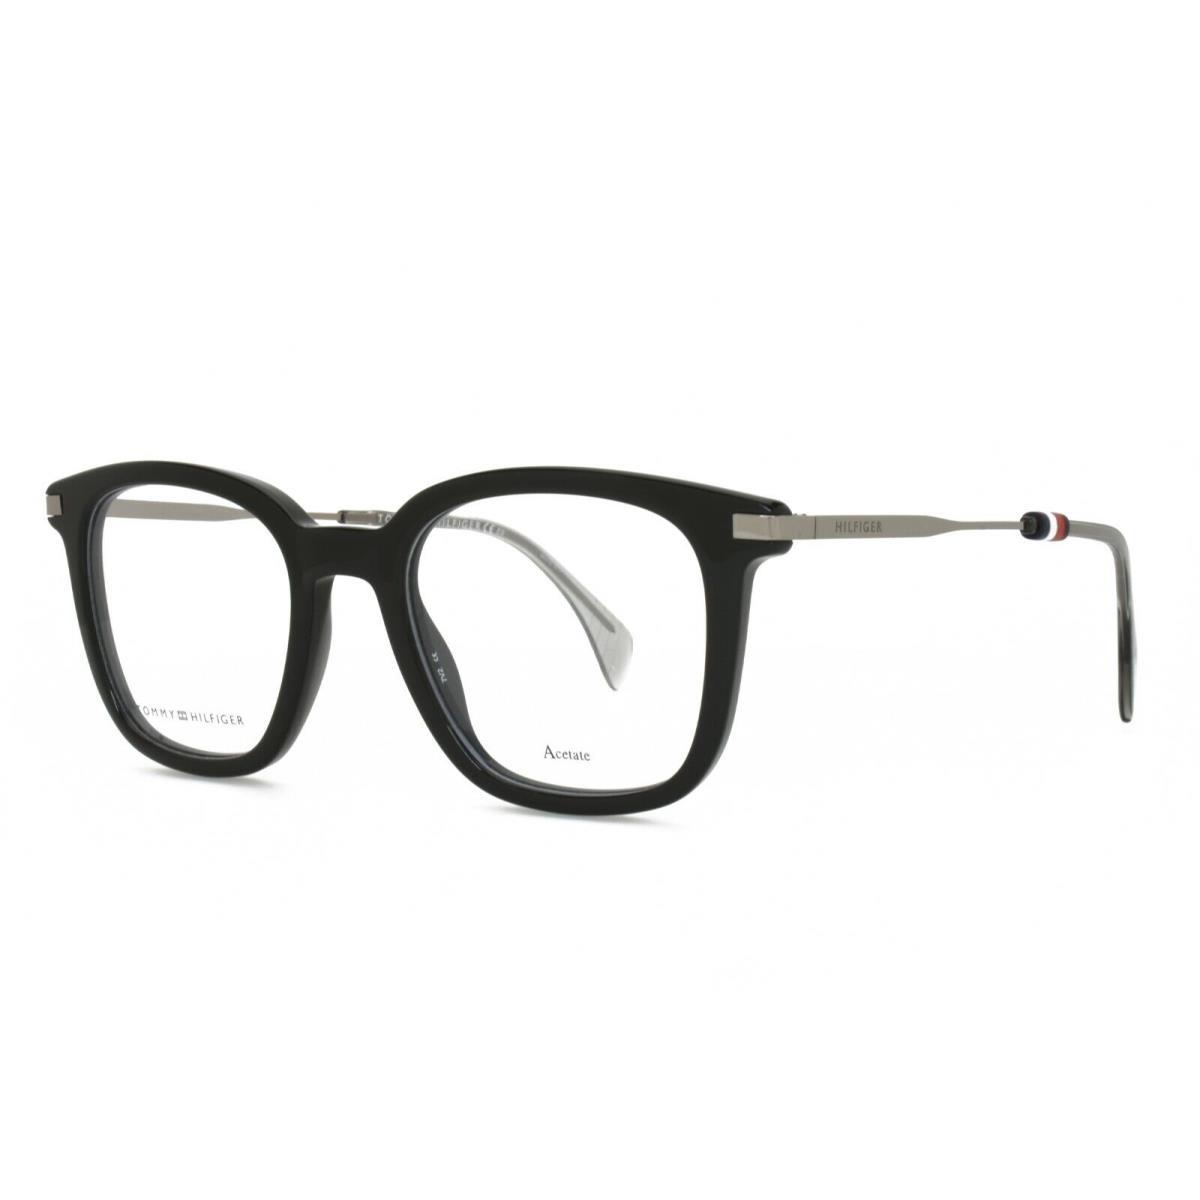 Tommy Hilfiger Eyeglasses 1516 807 48-20-145 Black